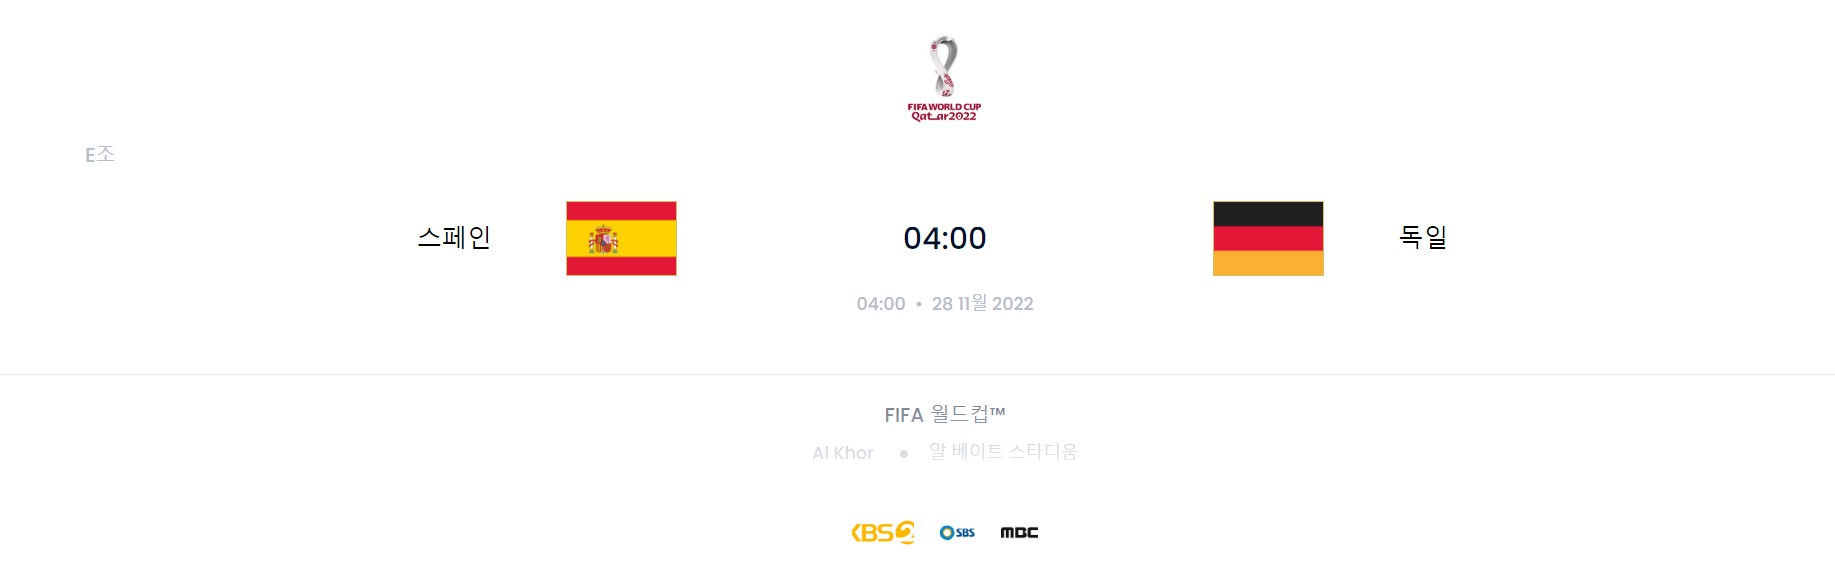 카타르 월드컵 E조 4경기 (스페인 VS 독일)